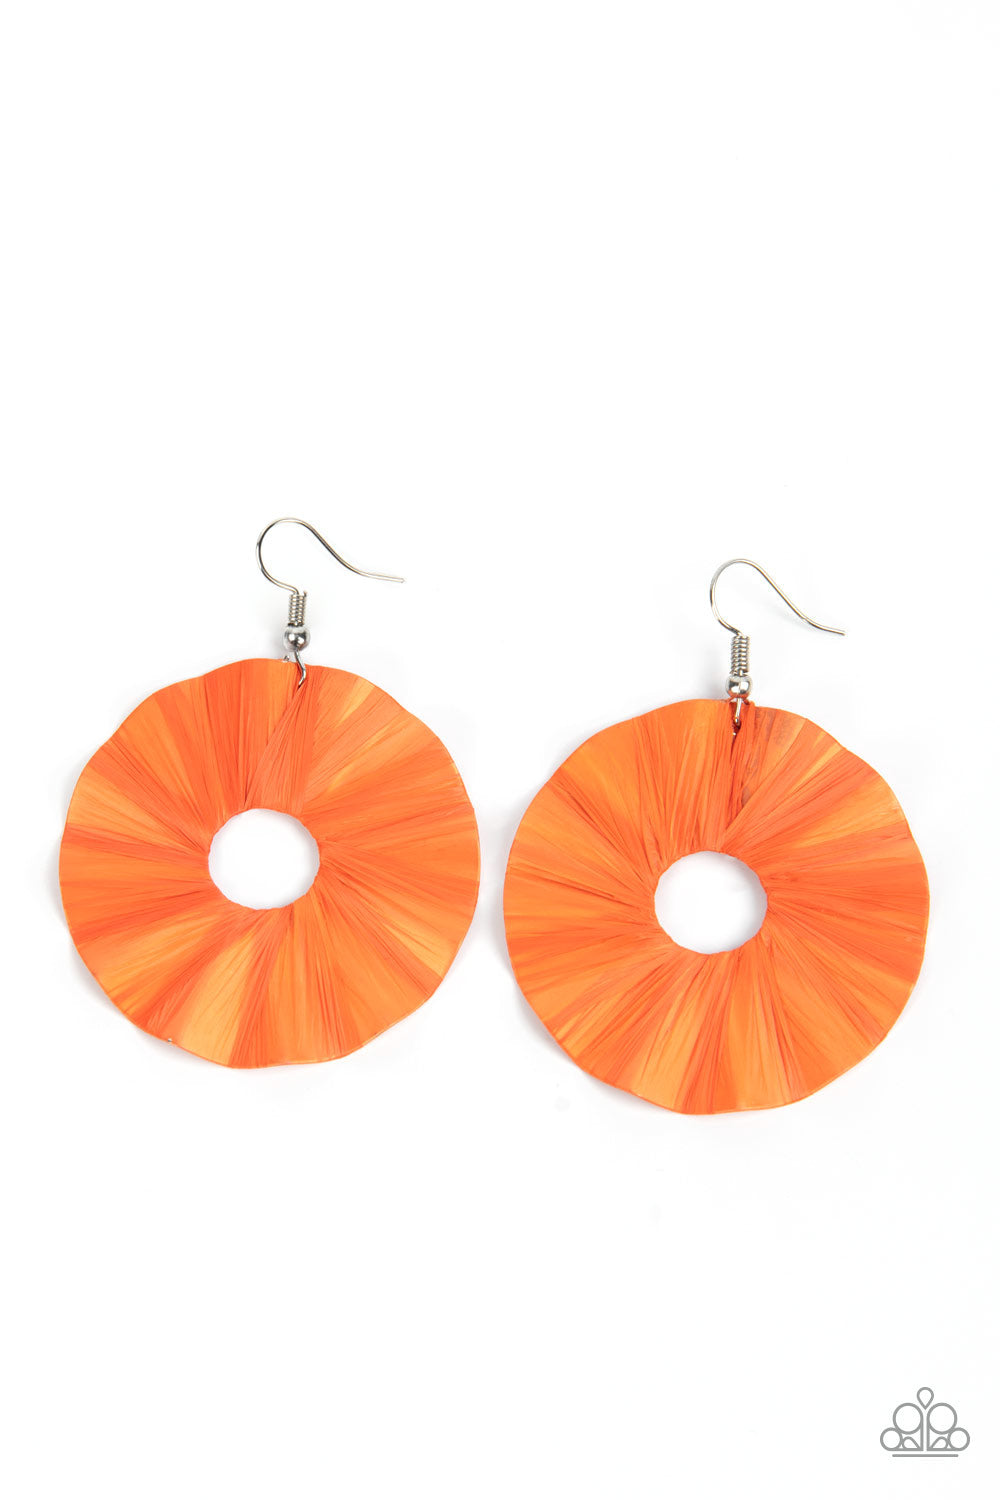 Fan the Breeze - Orange Earrings